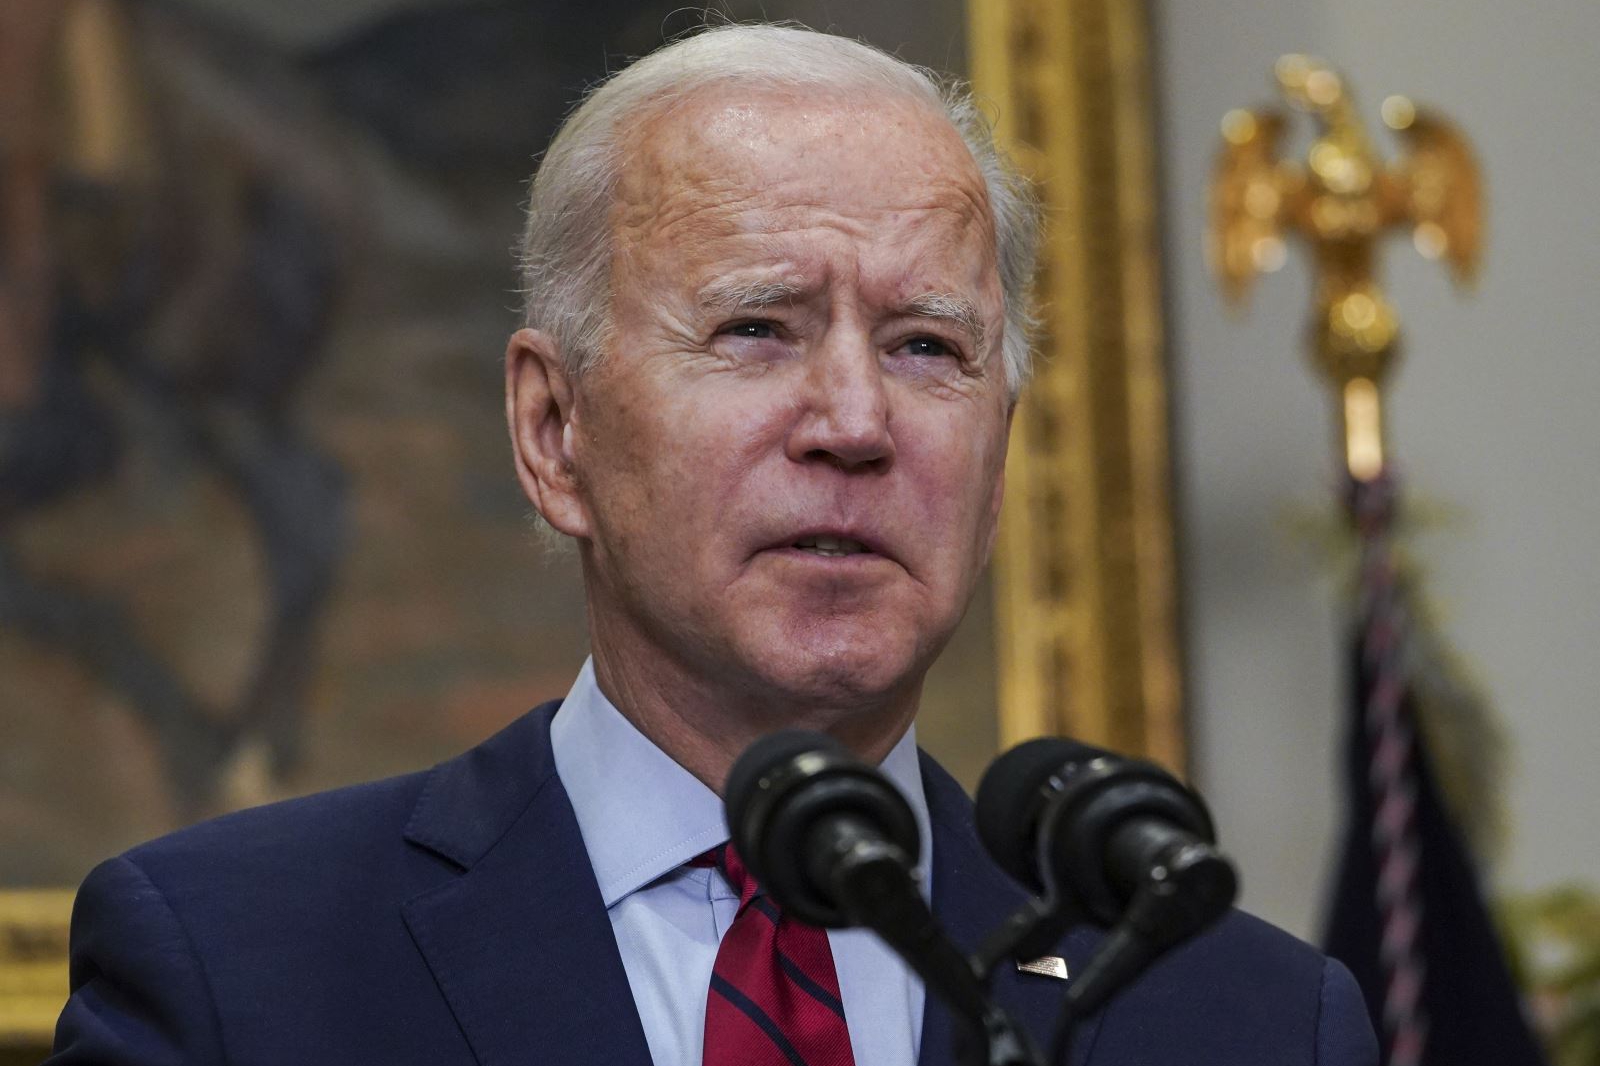 Tỉ lệ ủng hộ đối với Tổng thống Joe Biden giảm